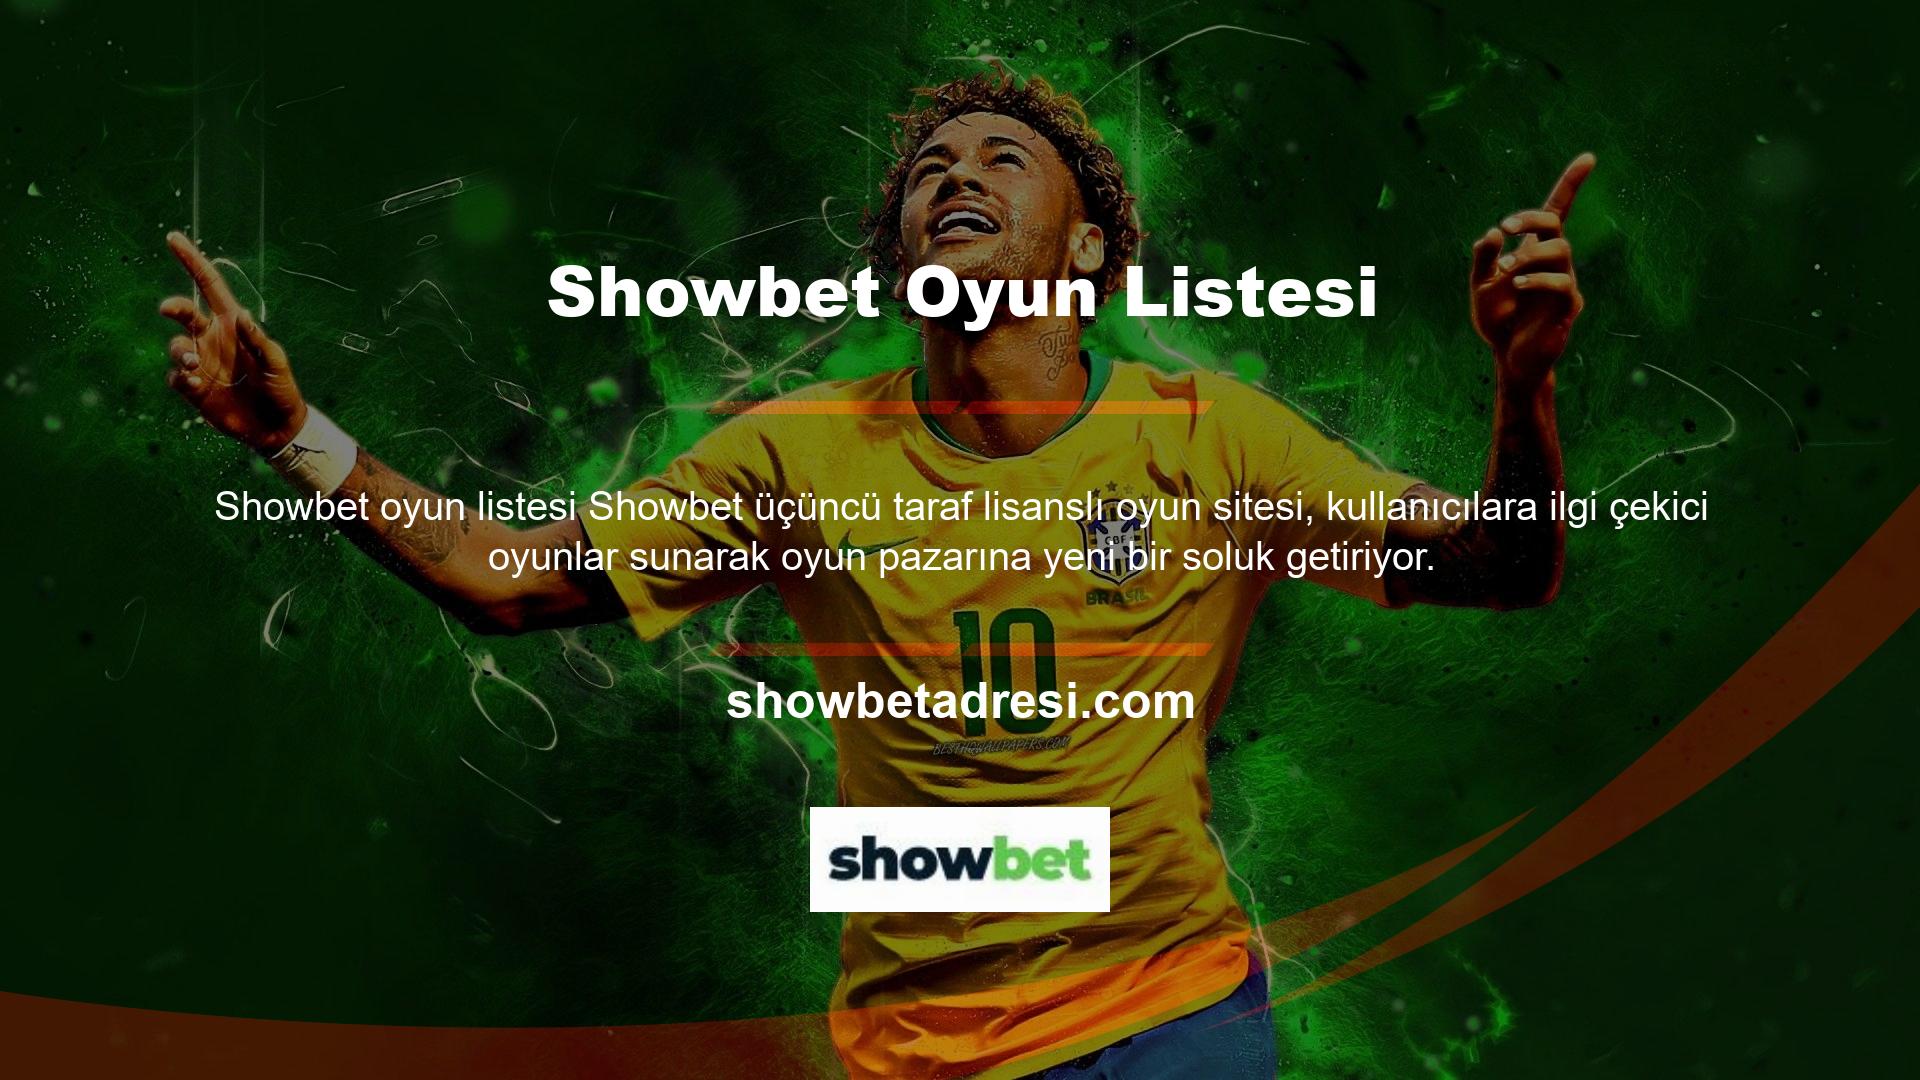 Günümüzde güvenilir bahis sitelerinin yüzdesi azalsa da Showbet hala kullanıcılarına güvenilir bahis hizmeti sunmaktadır